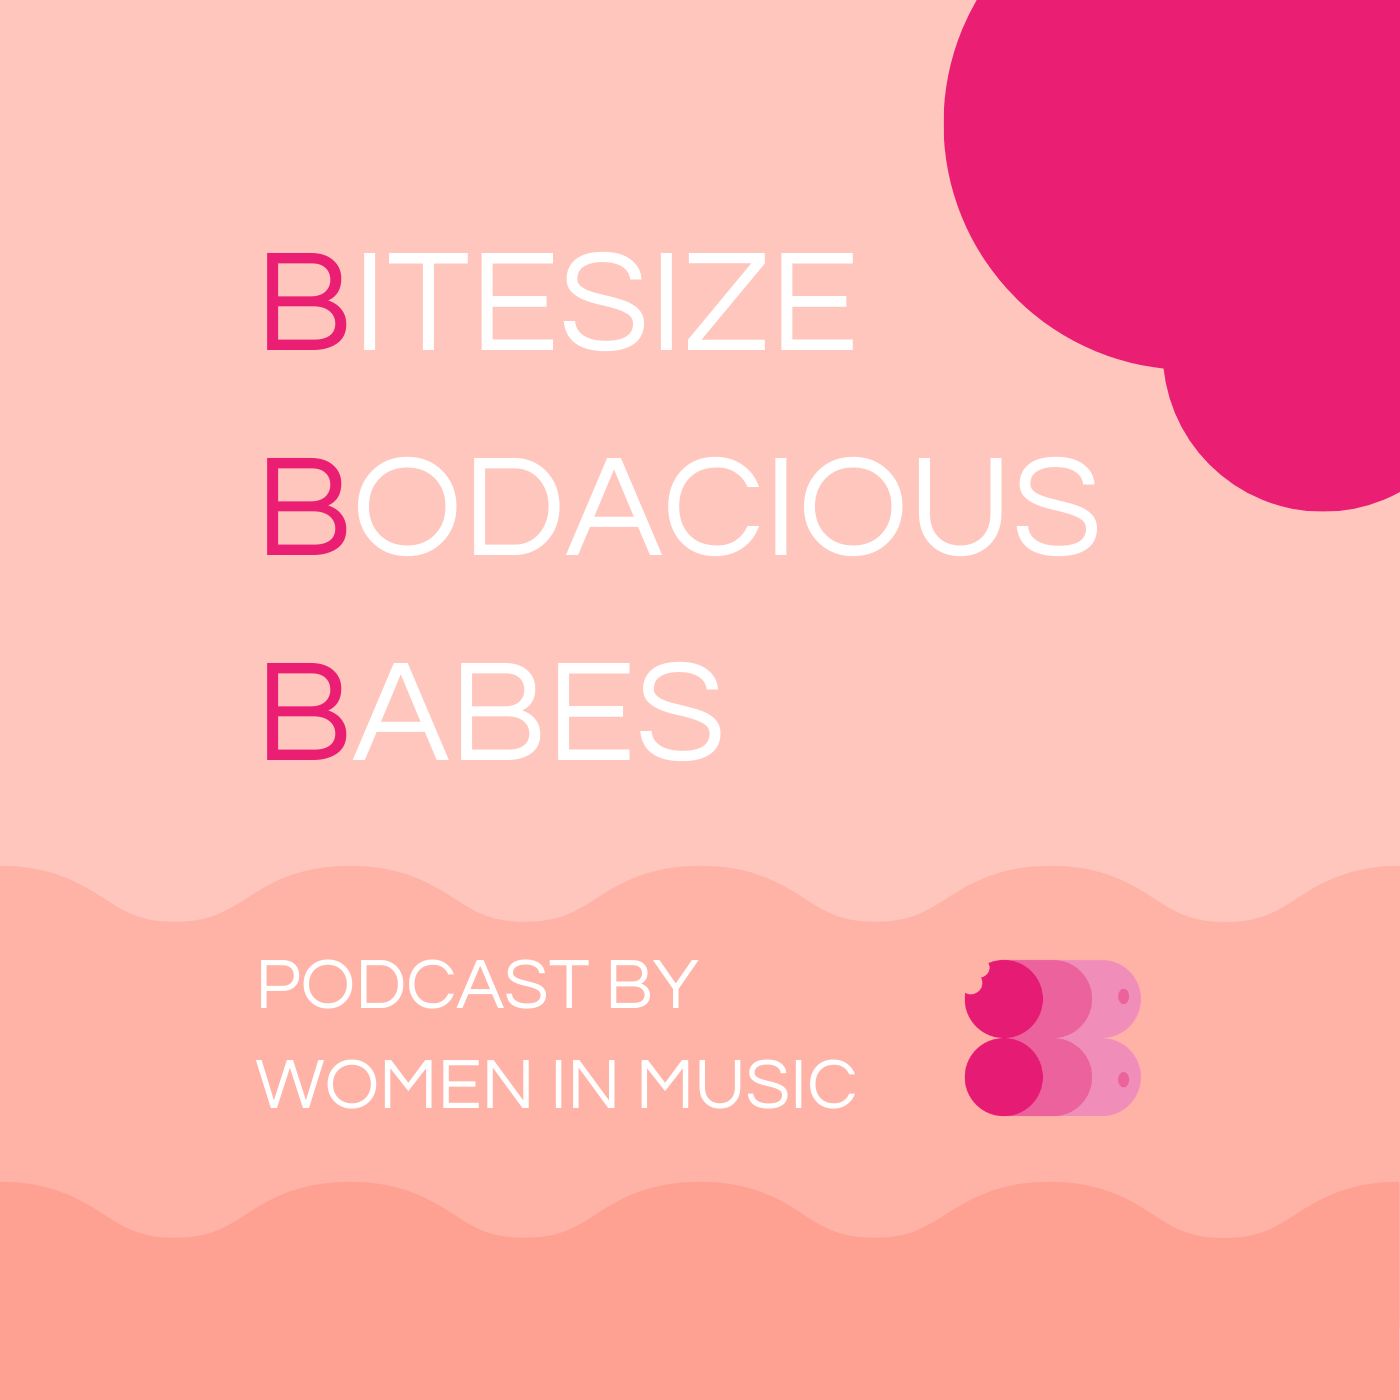 Bitesize Bodacious Babes podcast show image